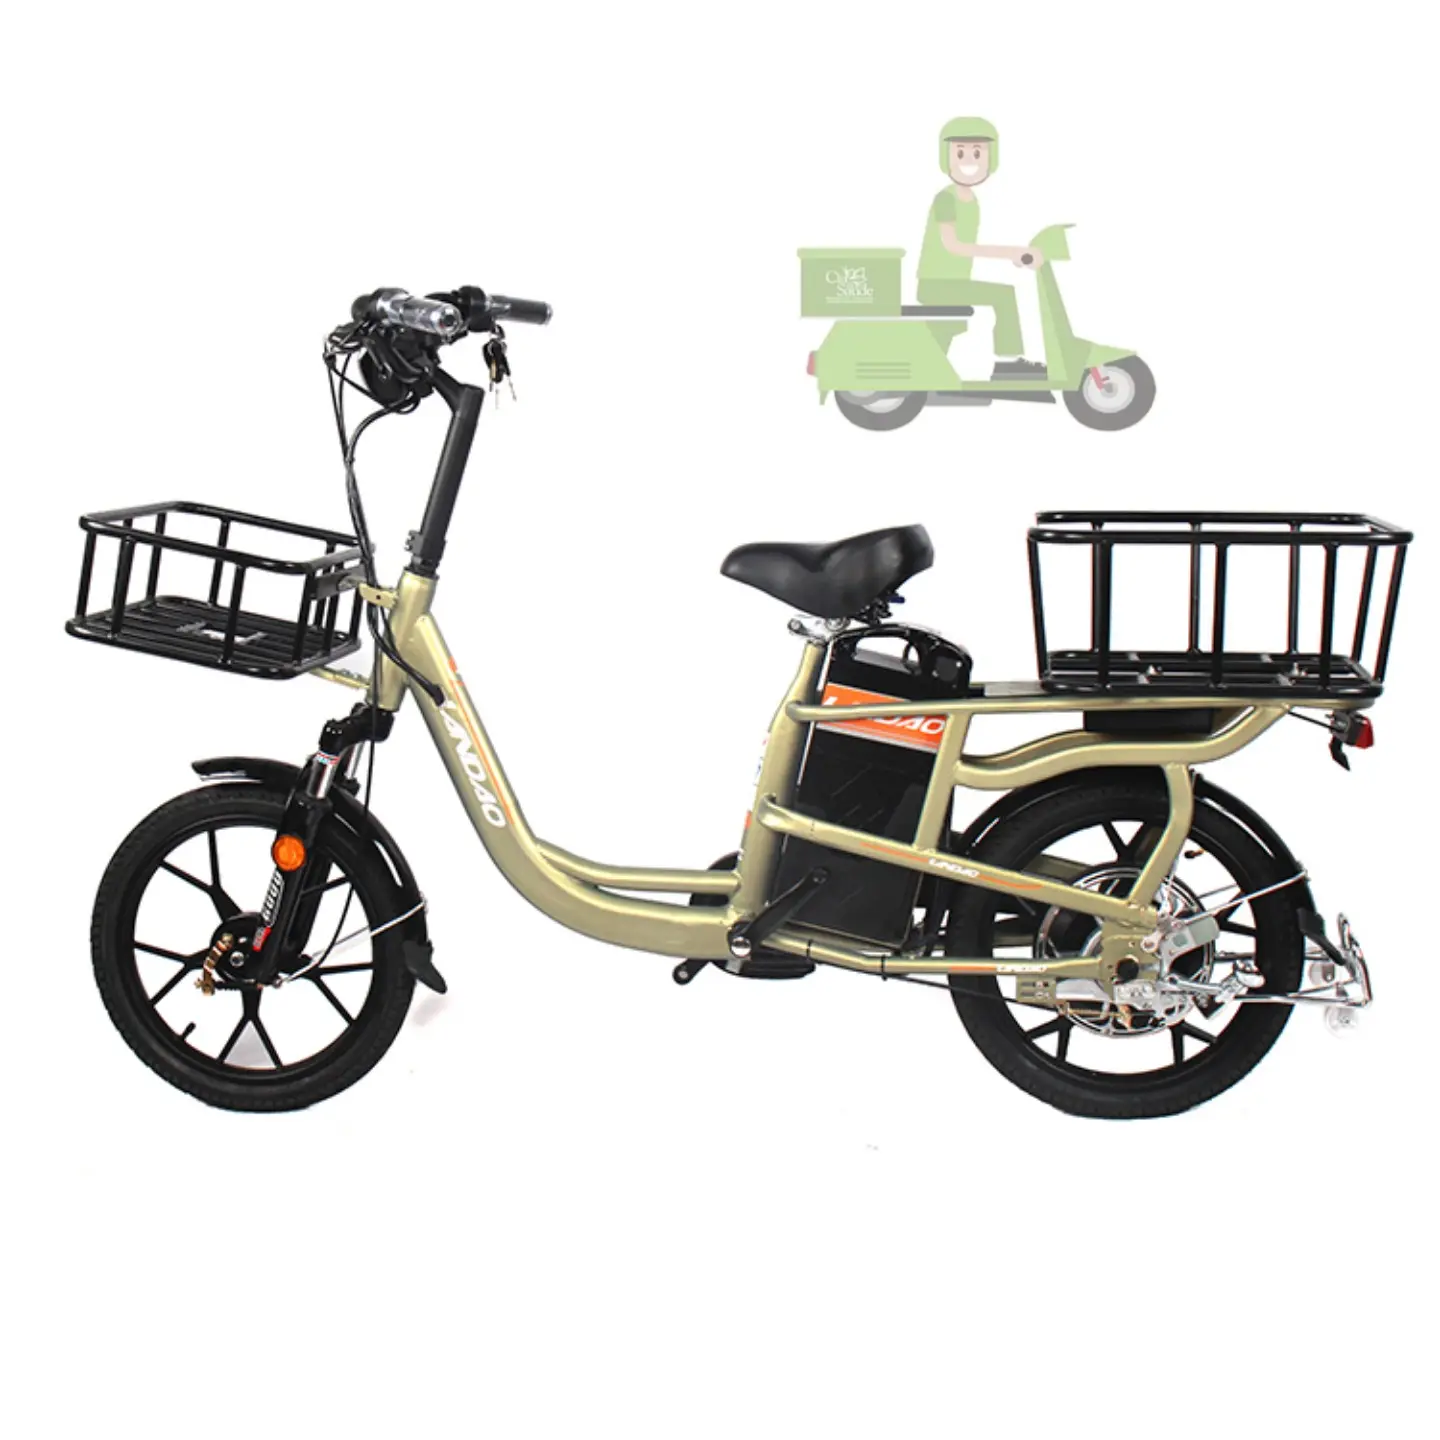 20inch 48V 500W food delivery ebike ,cargo bike coffee cargo bike cargo bike 2 wheel, electric electric cargo bike for adults